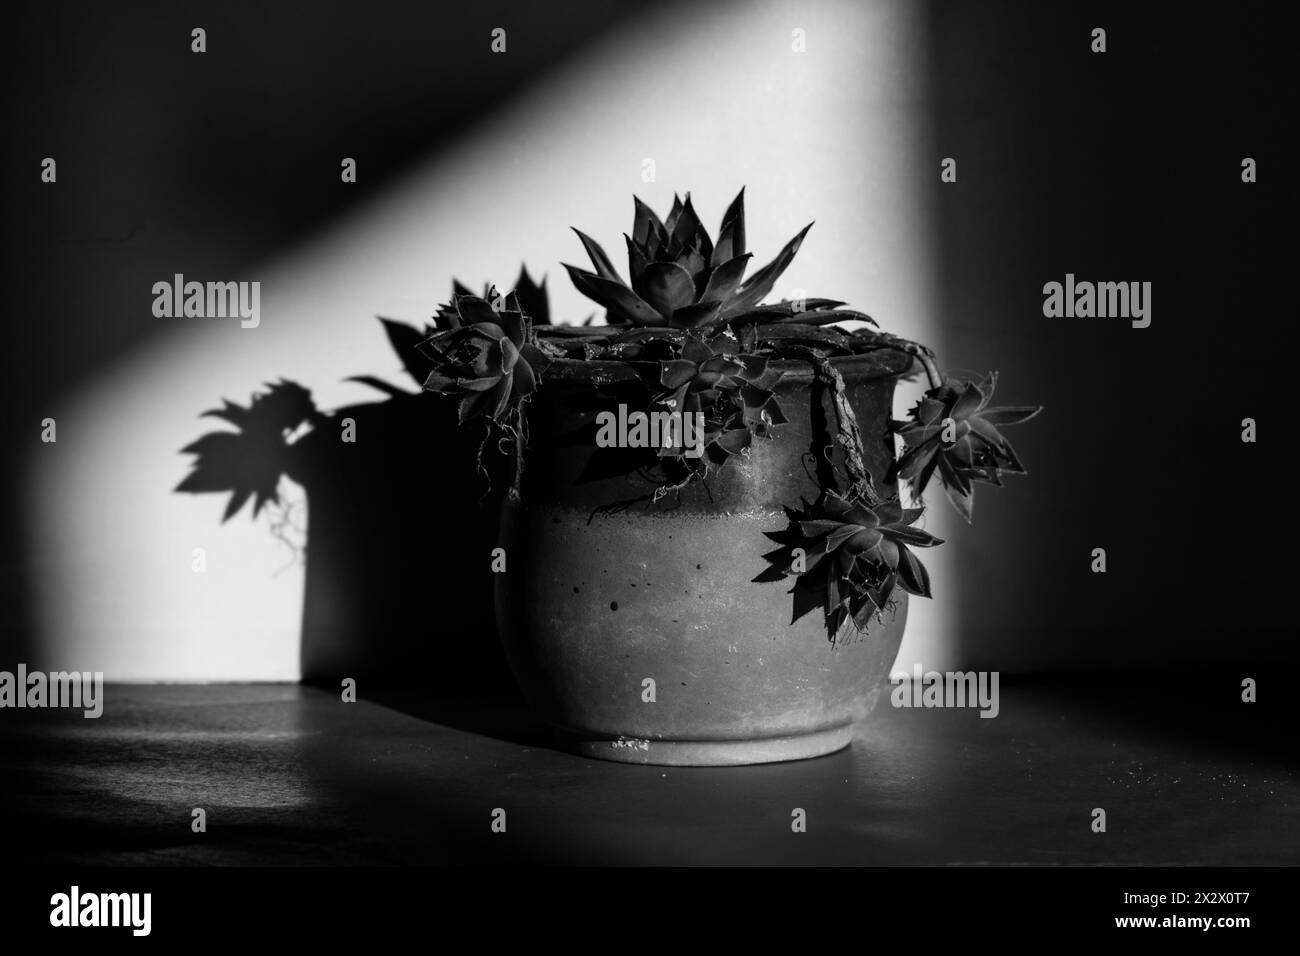 Plante succulente pousse dans un pot d'argile dans un intérieur homy photographie florale noire et blanche. Plante de cactus à l'intérieur dans un point de lumière. Spectre de lumière Banque D'Images